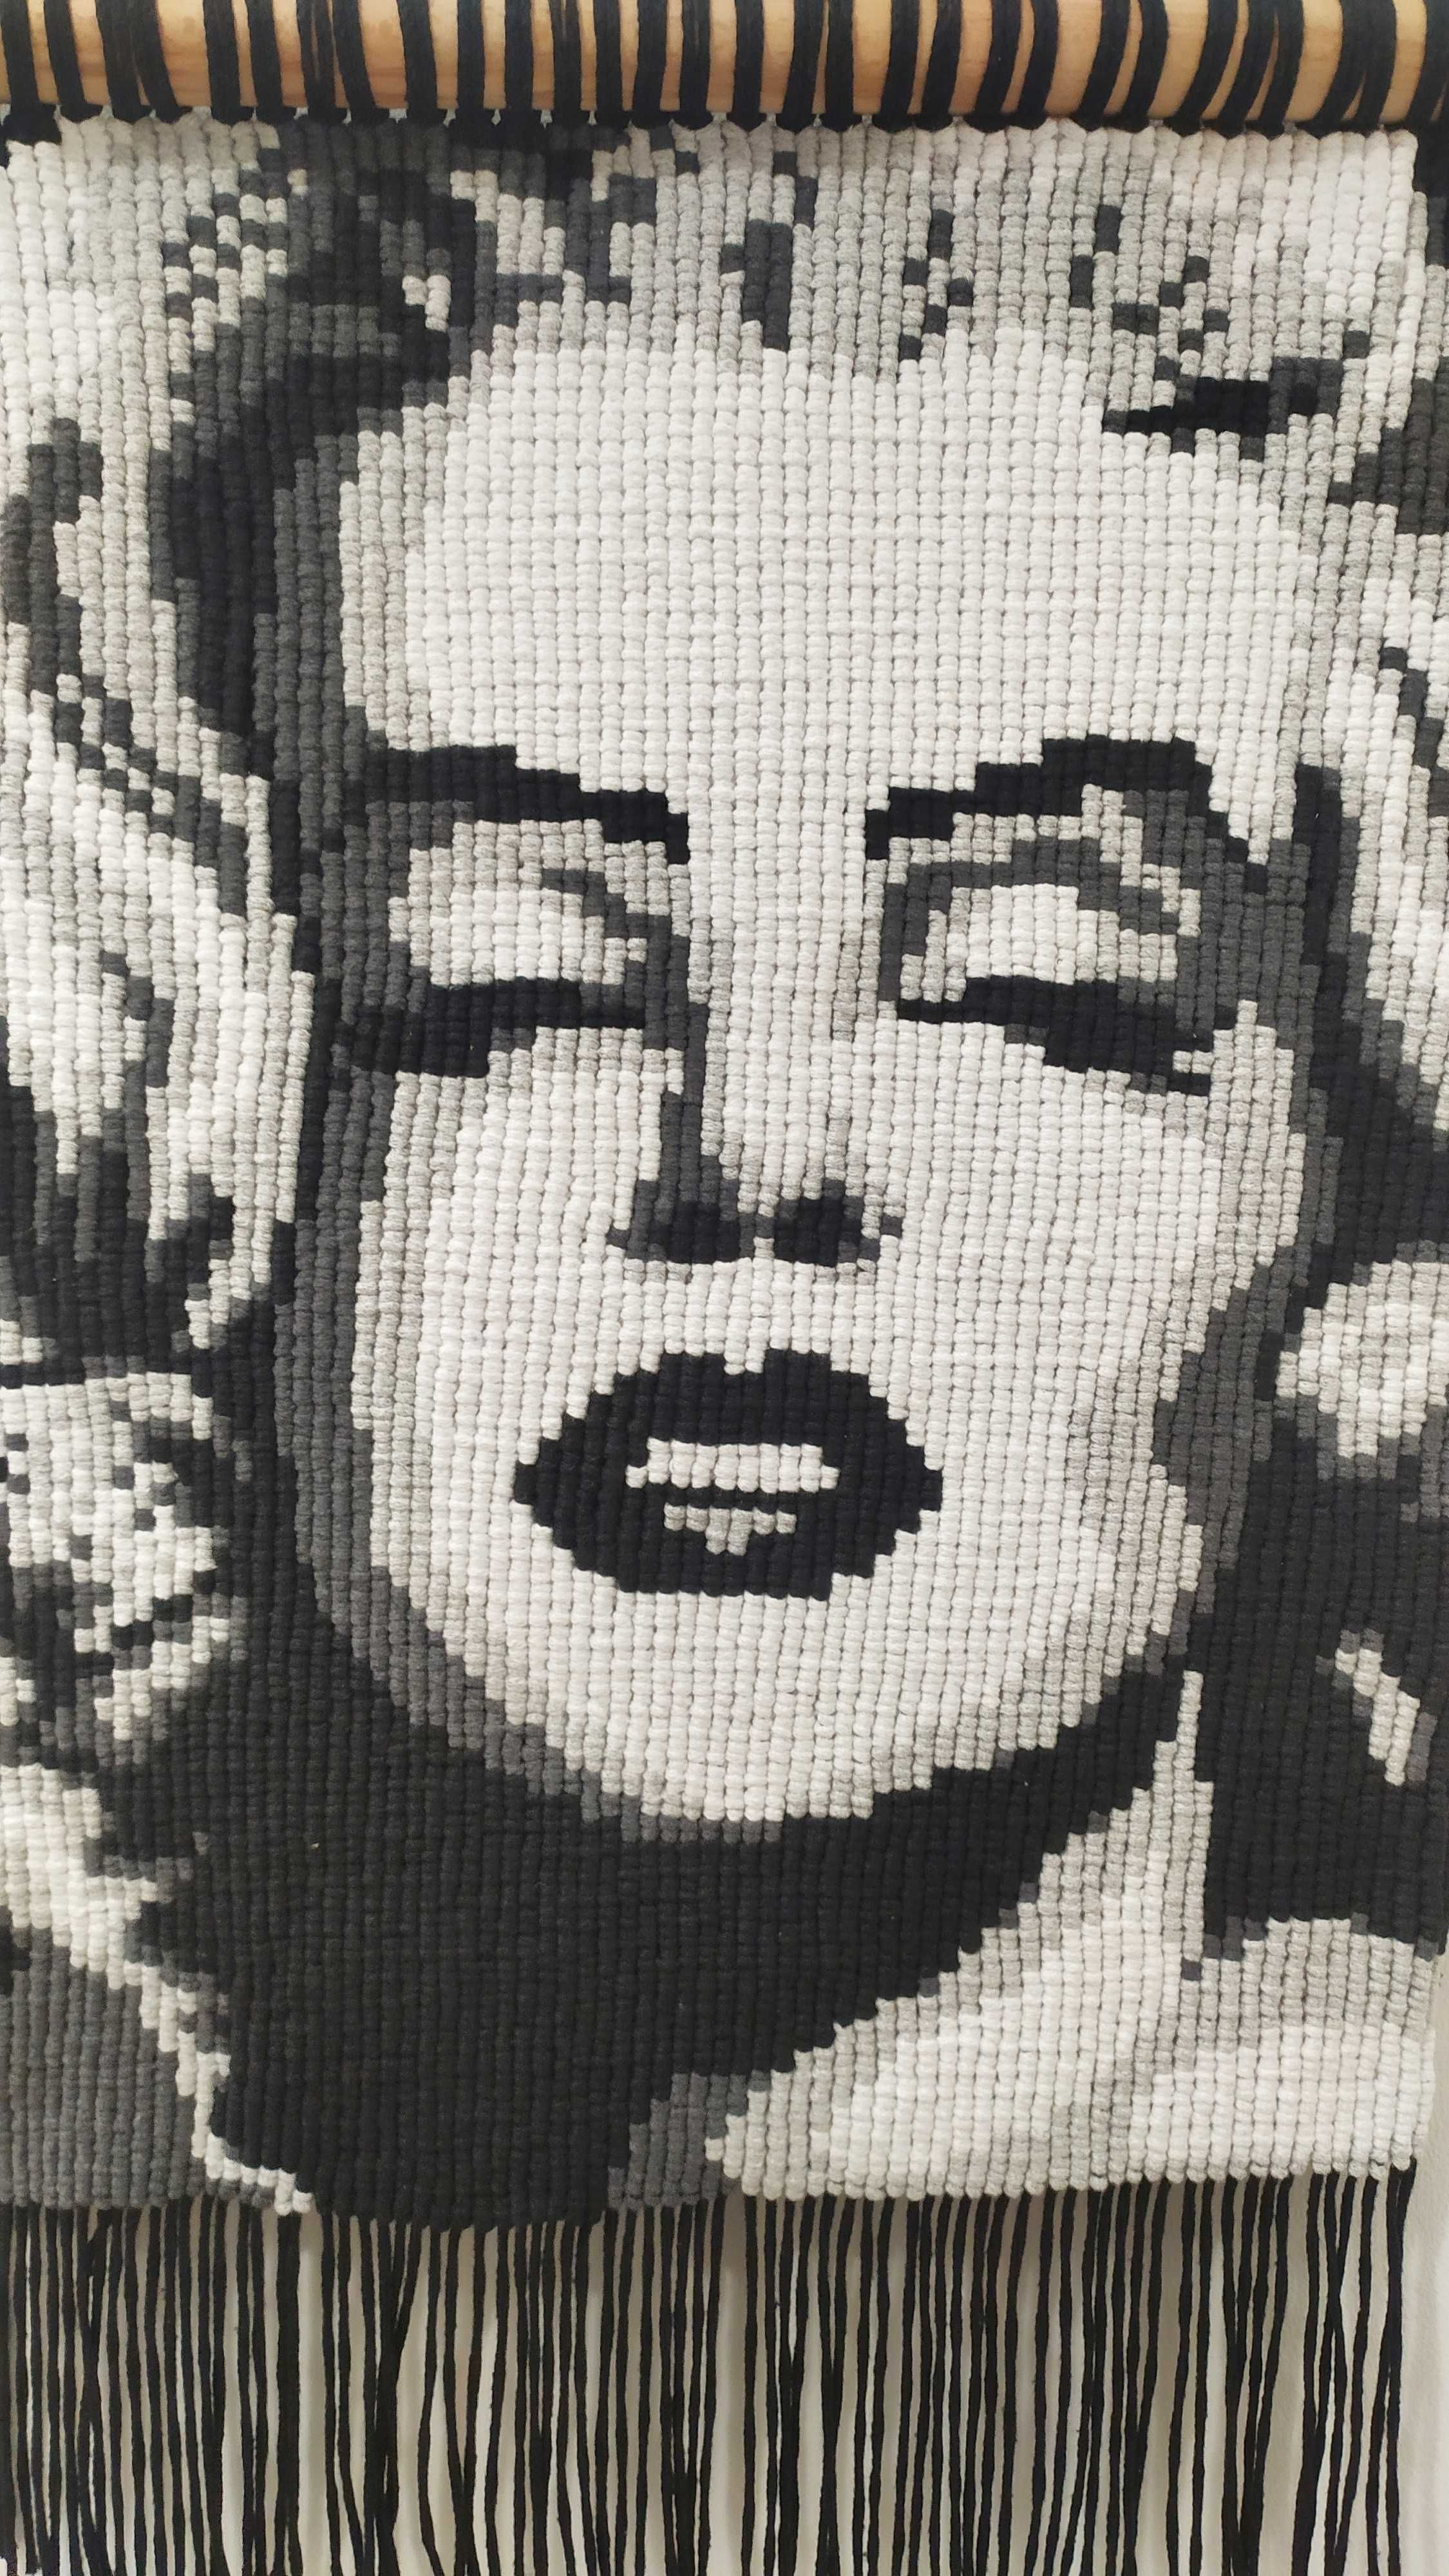 Ръчно изработено макраме пано с портрет на Мерилин Монро